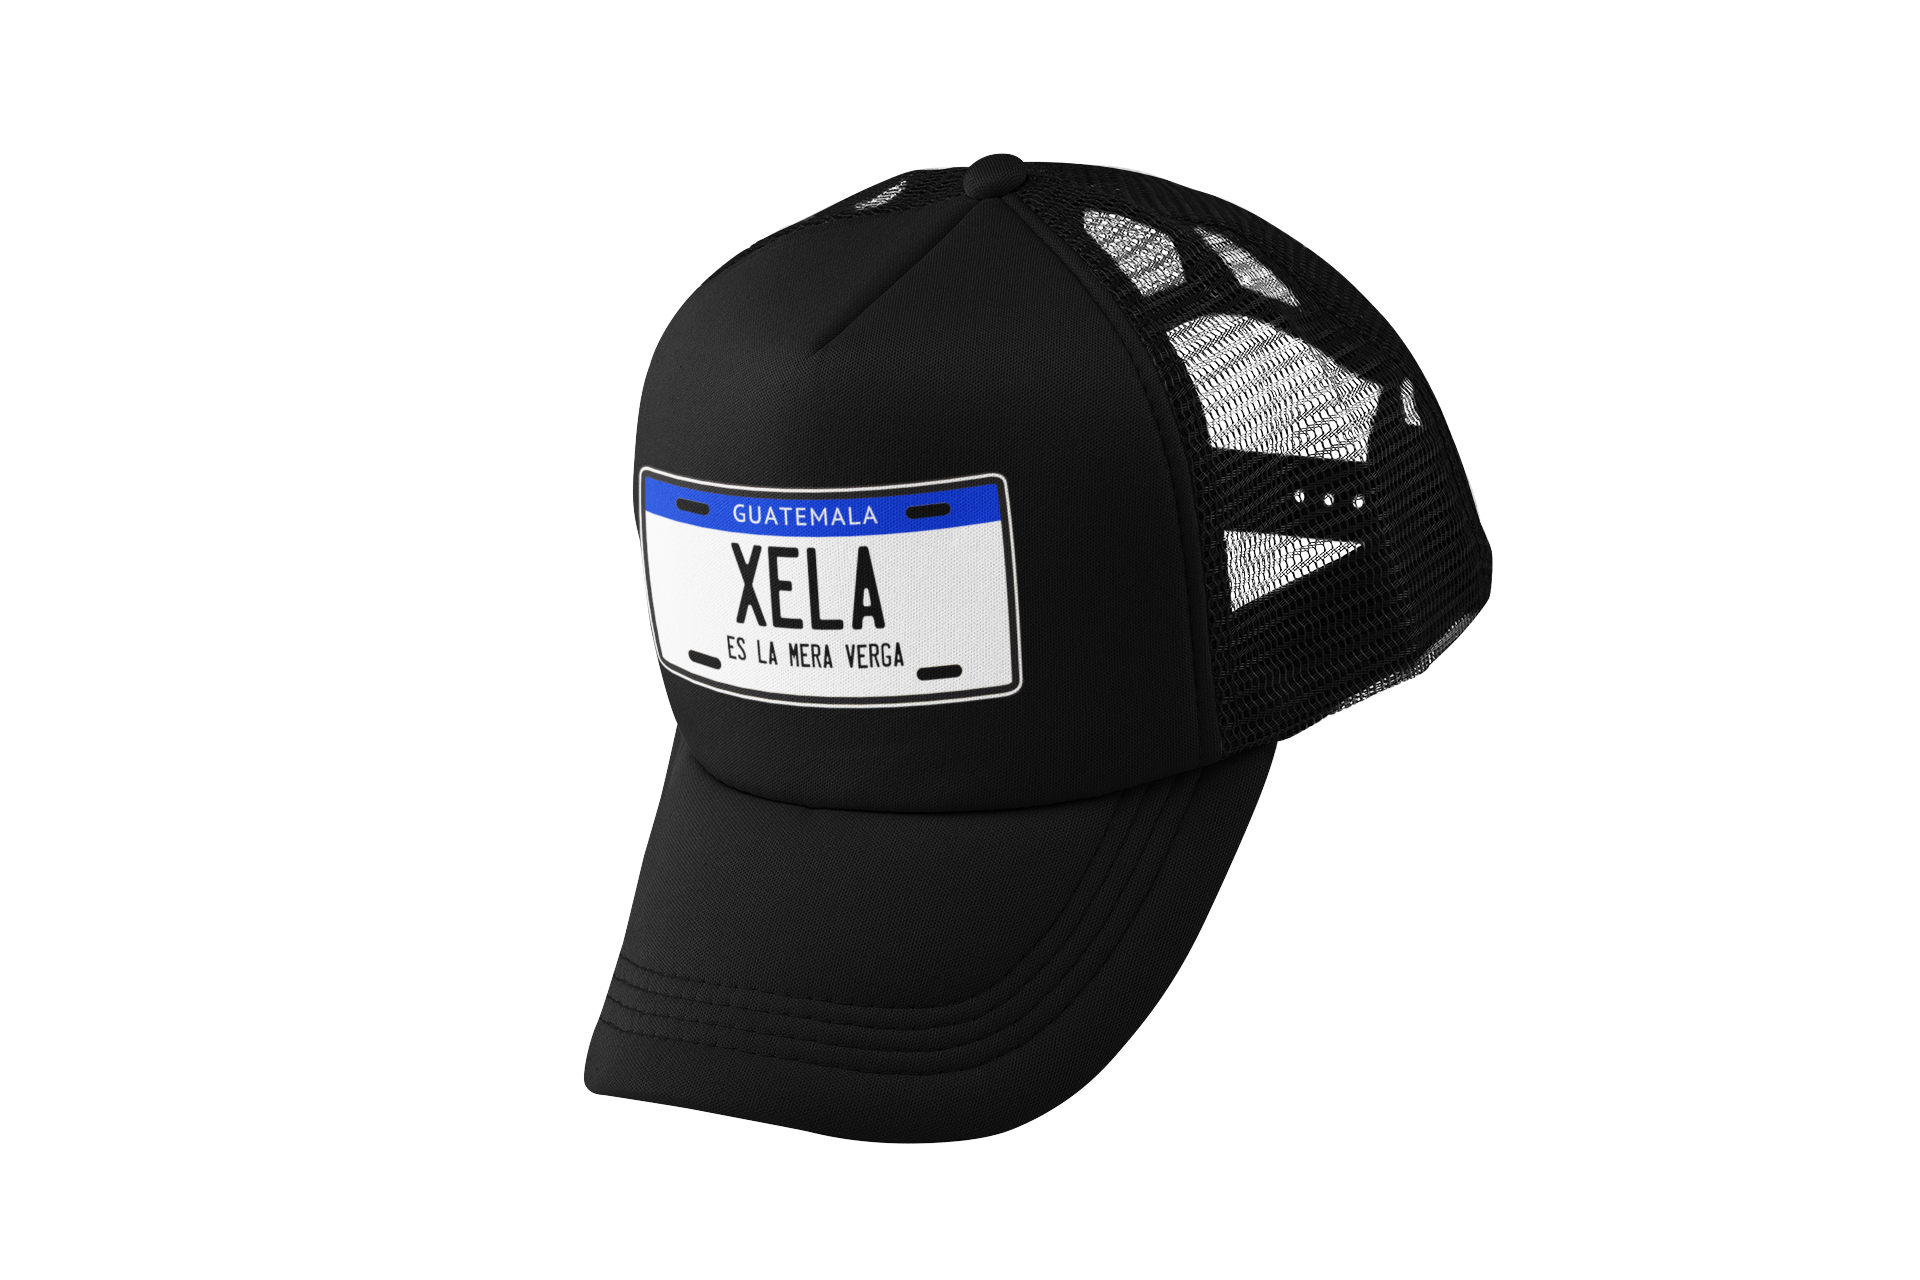 Descubre la exclusiva gorra tipo trucker de Xela, diseñada para amantes de la cultura urbana. Con ajuste personalizable para mayor comodidad